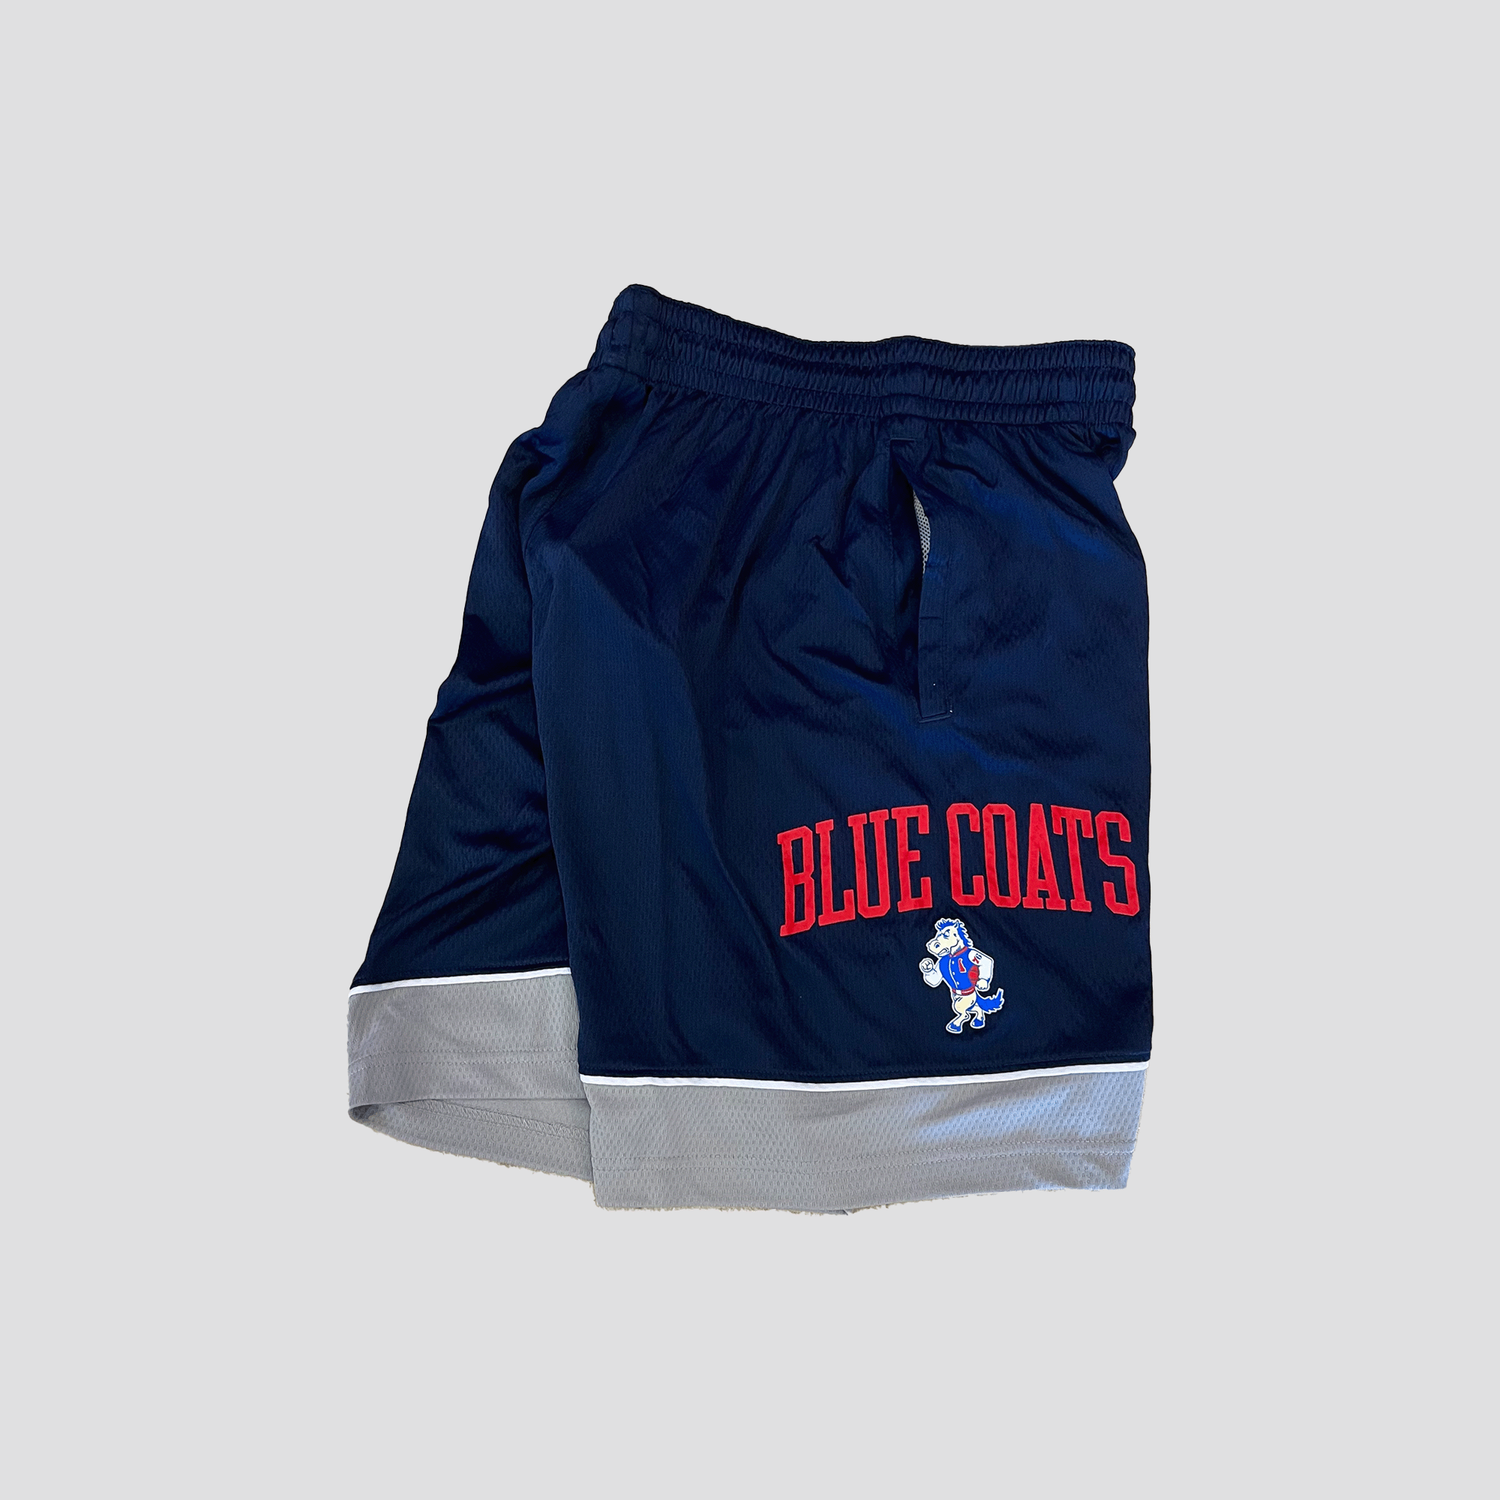 Delaware Blue Coats Gear, Blue Coats Jerseys, Store, Delaware Blue Coats  Pro Shop, Apparel